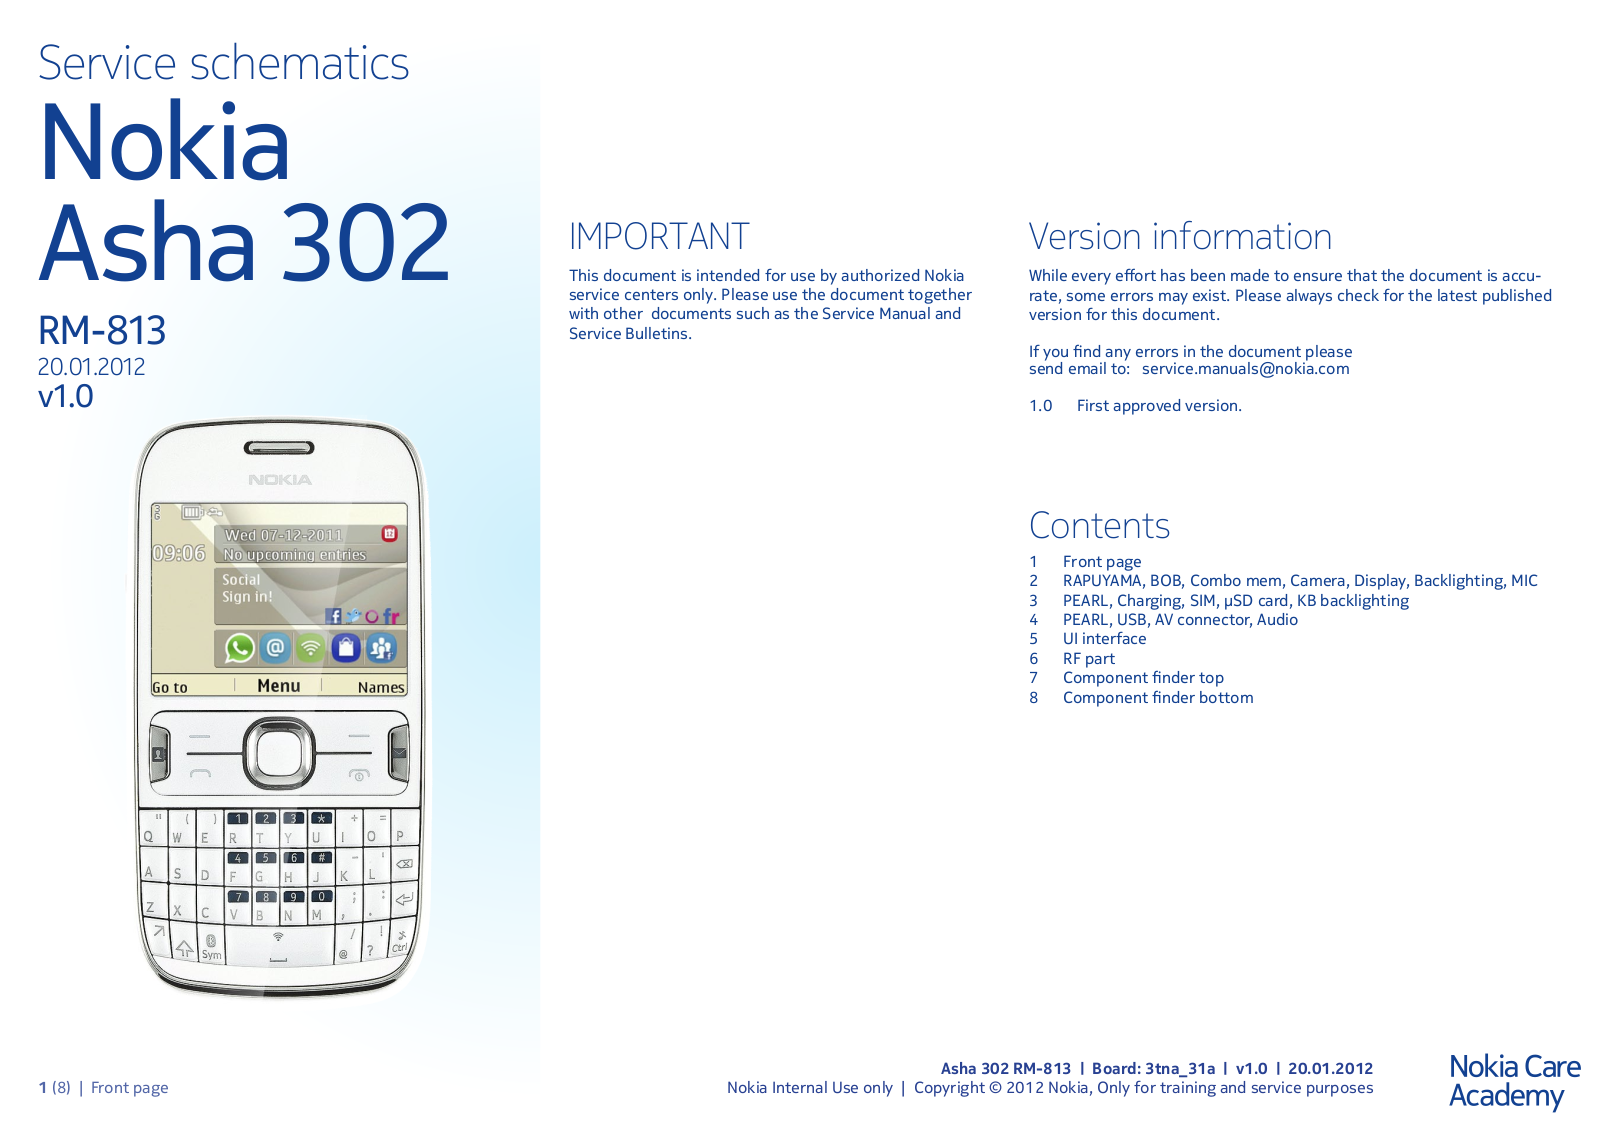 Nokia 302 RM-813 Schematic